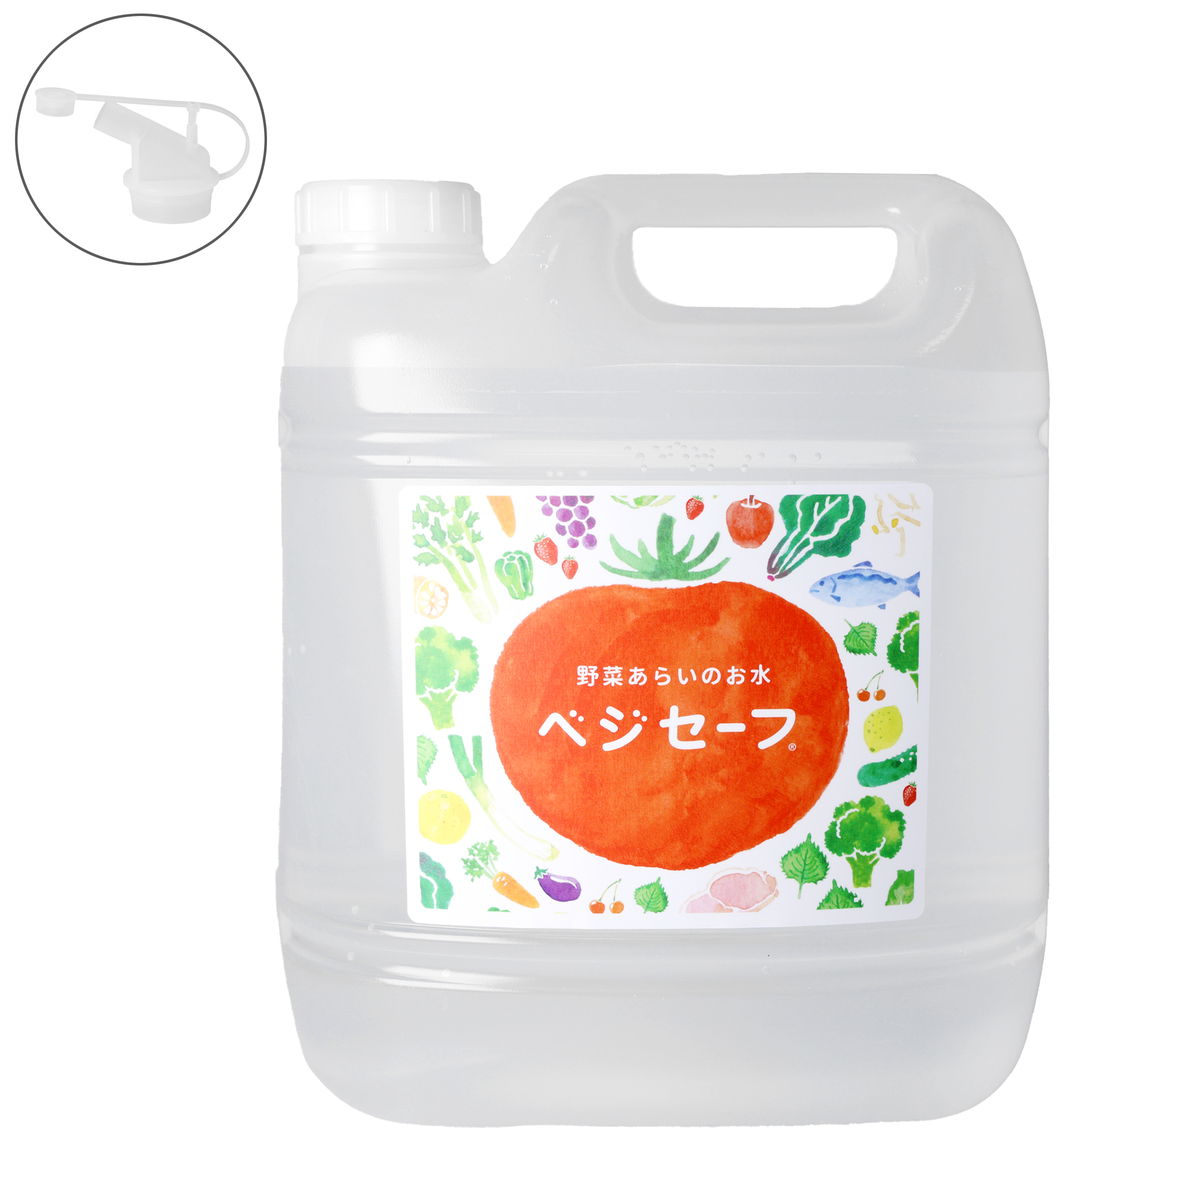 野菜洗いのお水 ベジセーフ 4L ベジセーフ - QVC.jp